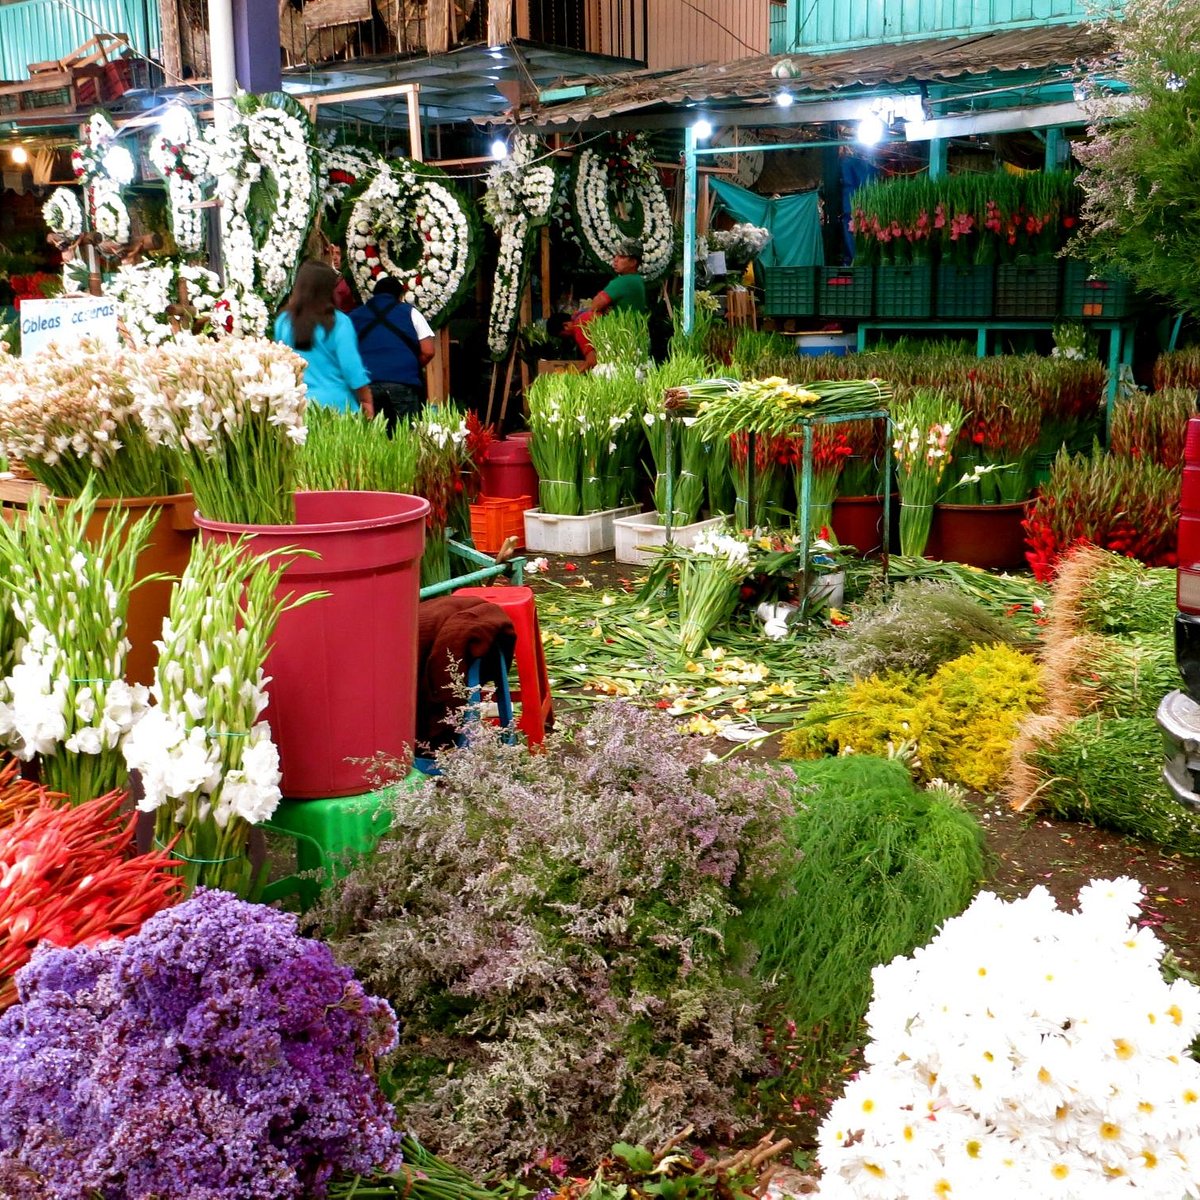 Mercado de Jamaica (Mexico City) - All You Need to Know BEFORE You Go